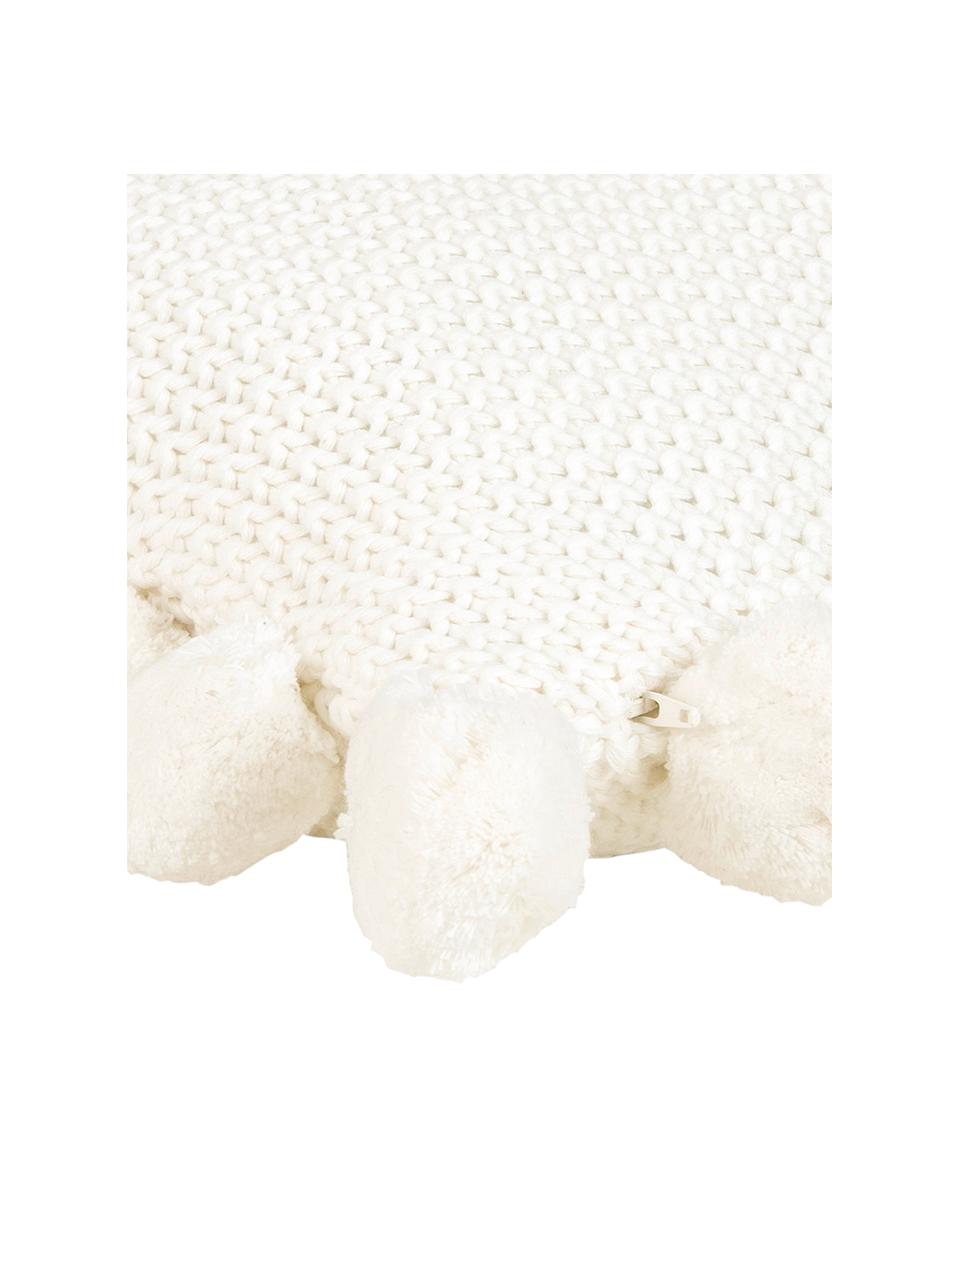 Federa arredo a maglia color crema con pompon Molly, 100% cotone, Bianco crema, Larg. 40 x Lung. 40 cm